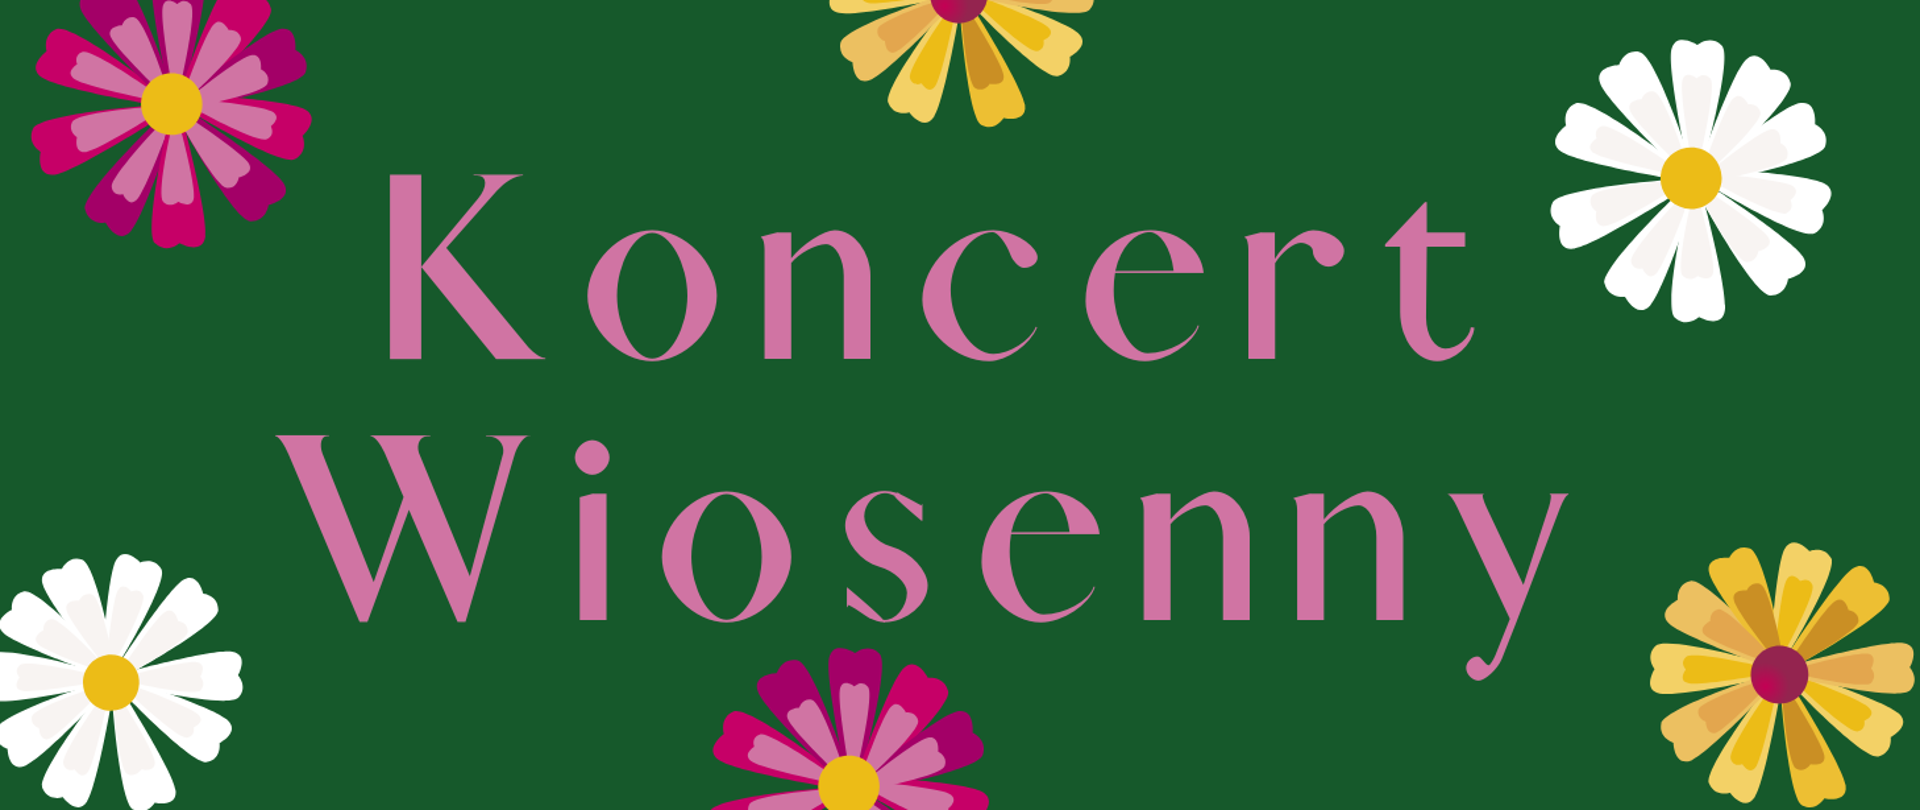 Na ciemnozielonym tle ozdobionym kwiatami, w centralnej części widnieje napis Koncert wiosenny